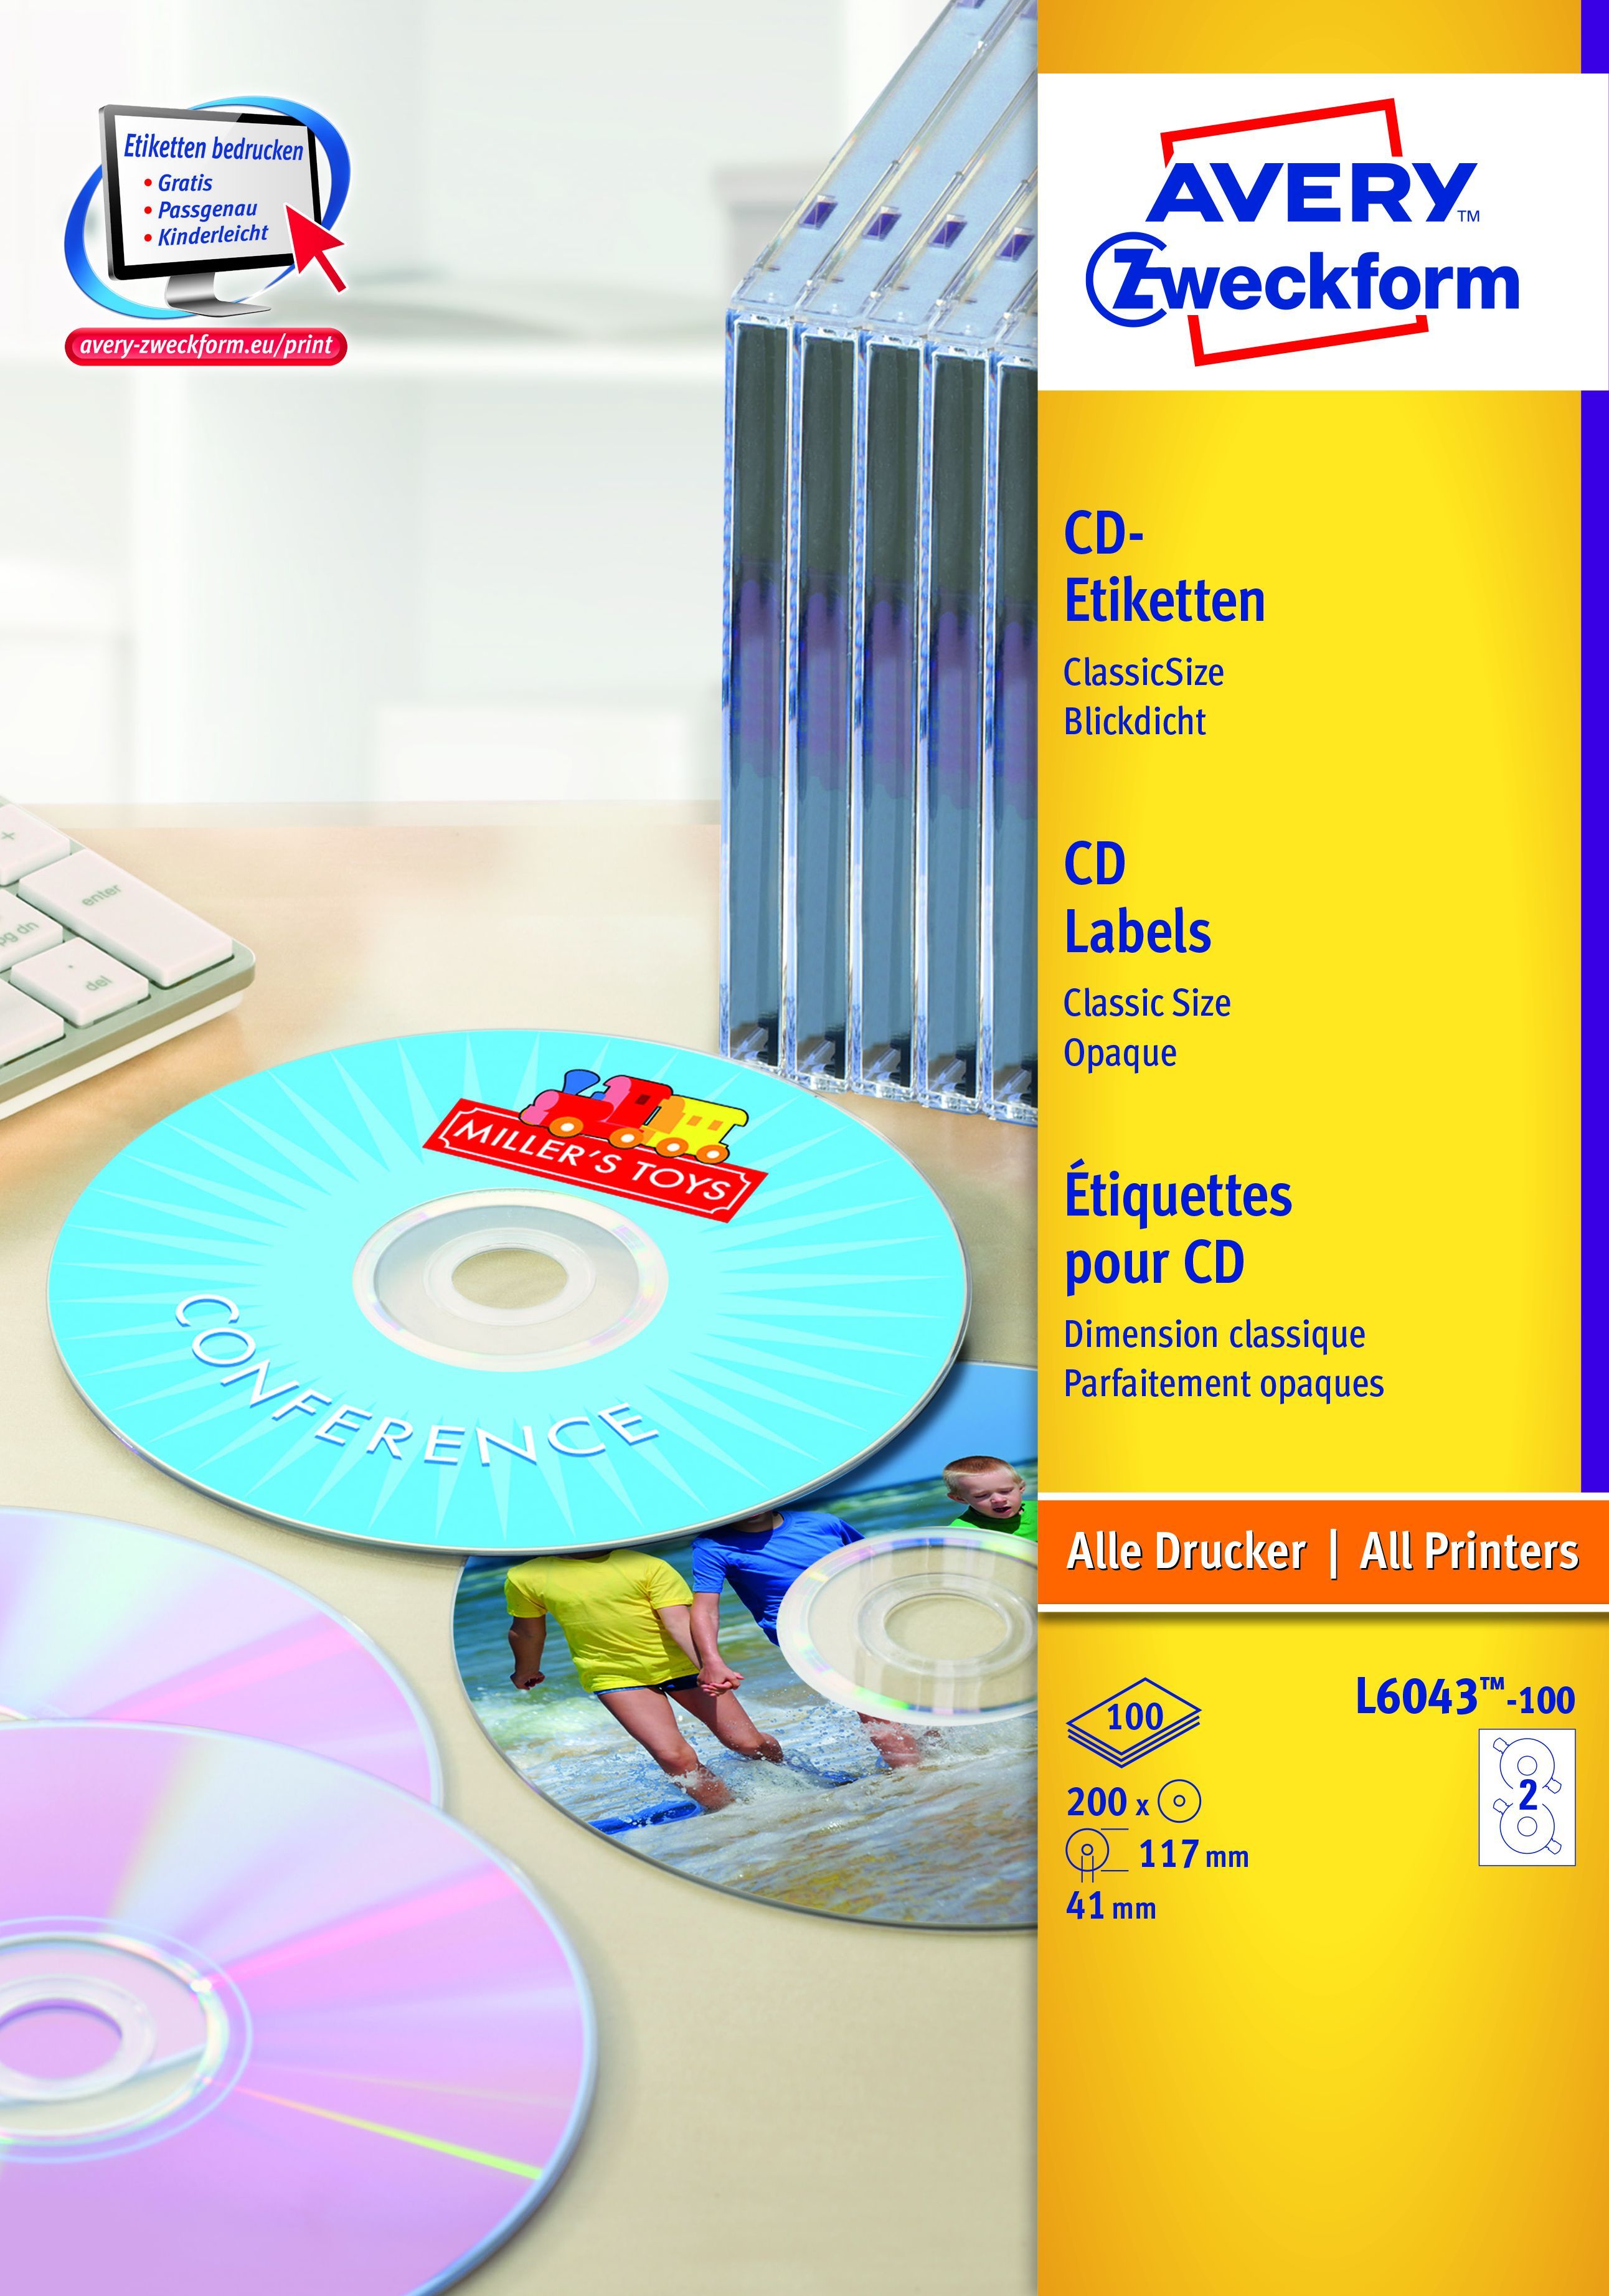 L6043-100 CD-Etiketten, Ø 117 mm, 100 Blatt/200 Etiketten, weiß